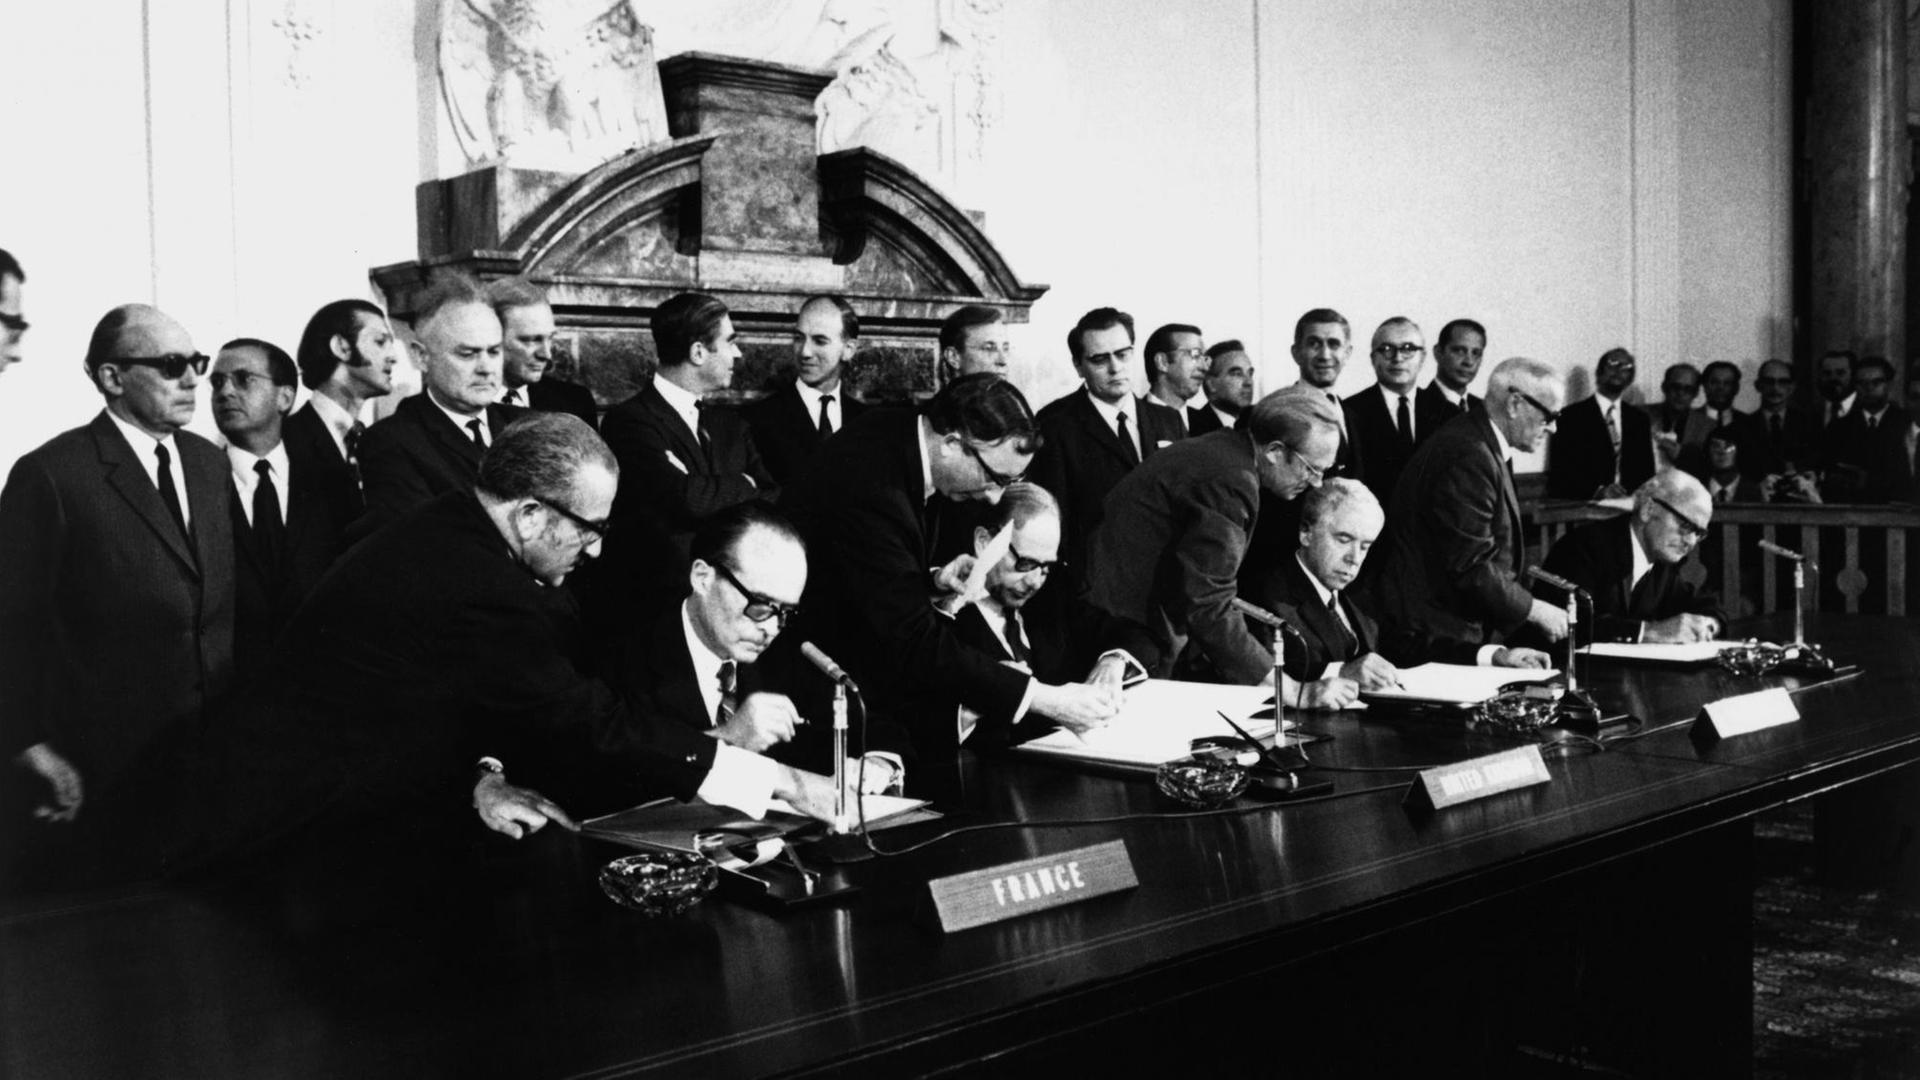 Unterzeichnung des Viermächte-Abkommens über Berlin im Gebäude des Alliierten Kontrollrats in Berlin (West) am 3. September 1971. Die vier Botschafter v.li. Jean Sau- vagnargues (Frankreich), R.Jackling (Großbritannien), P.Abrassimow (UdSSR), K.Rush (USA)